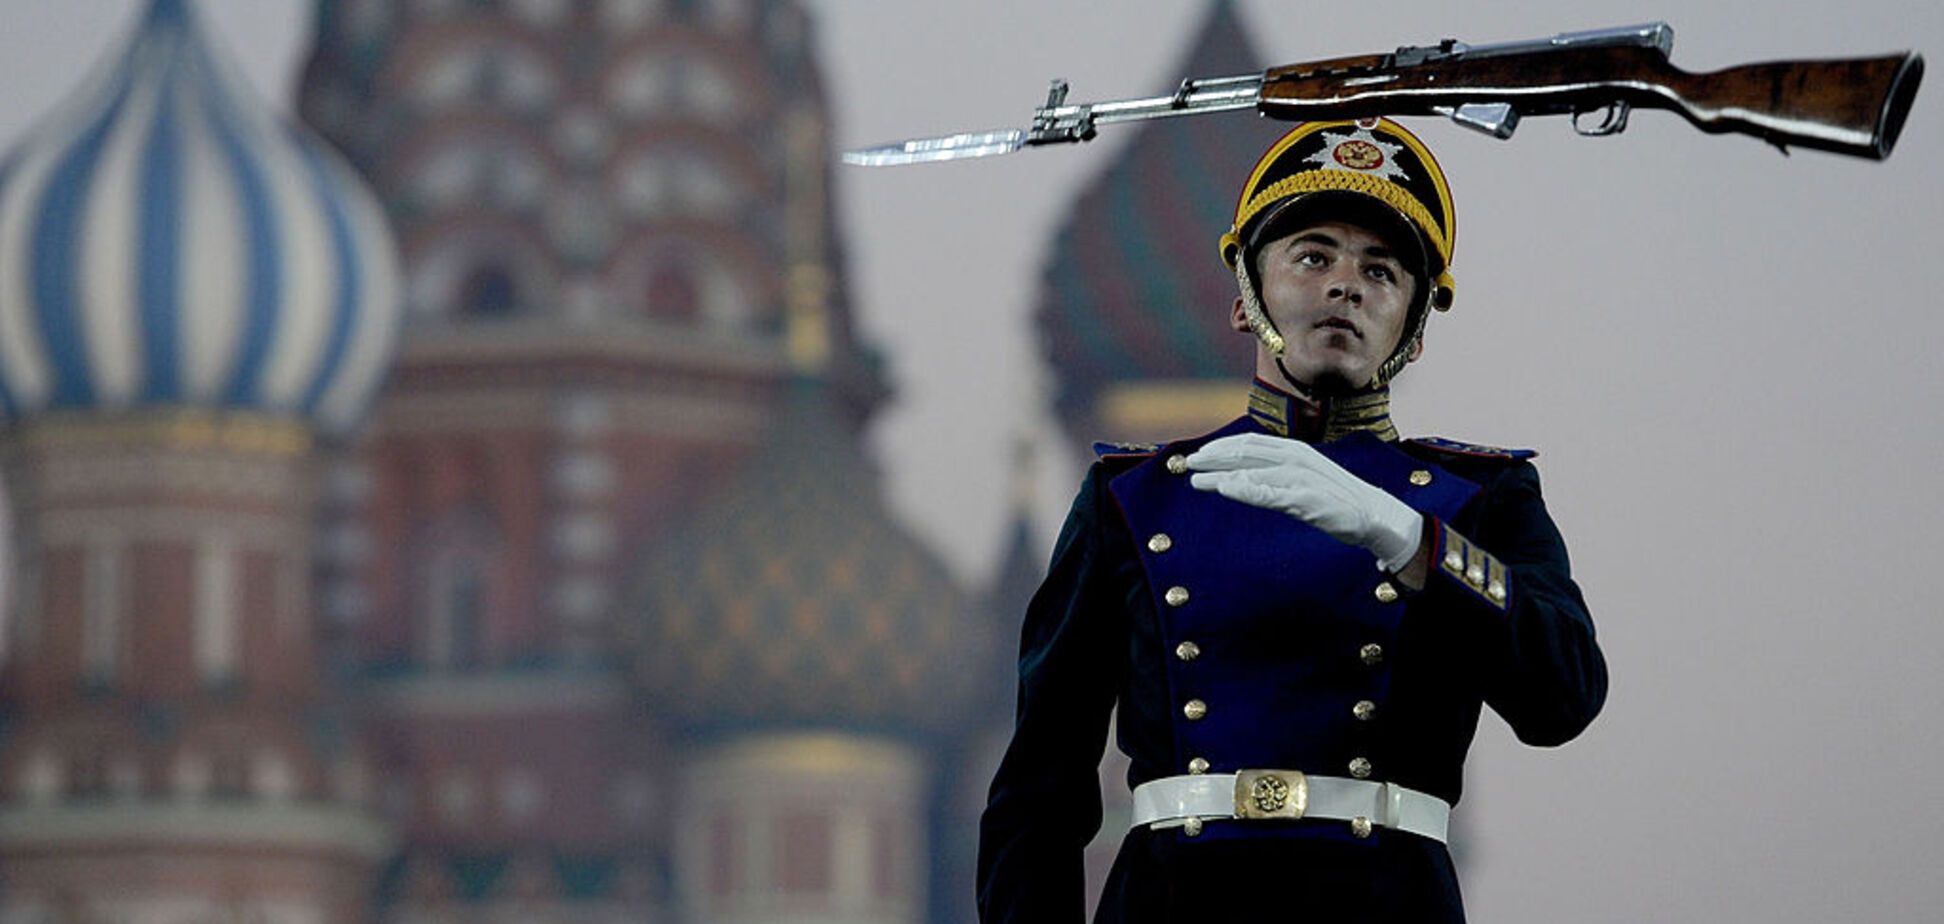 В Кремле стало грустно и густо потянуло смрадным сероводородом